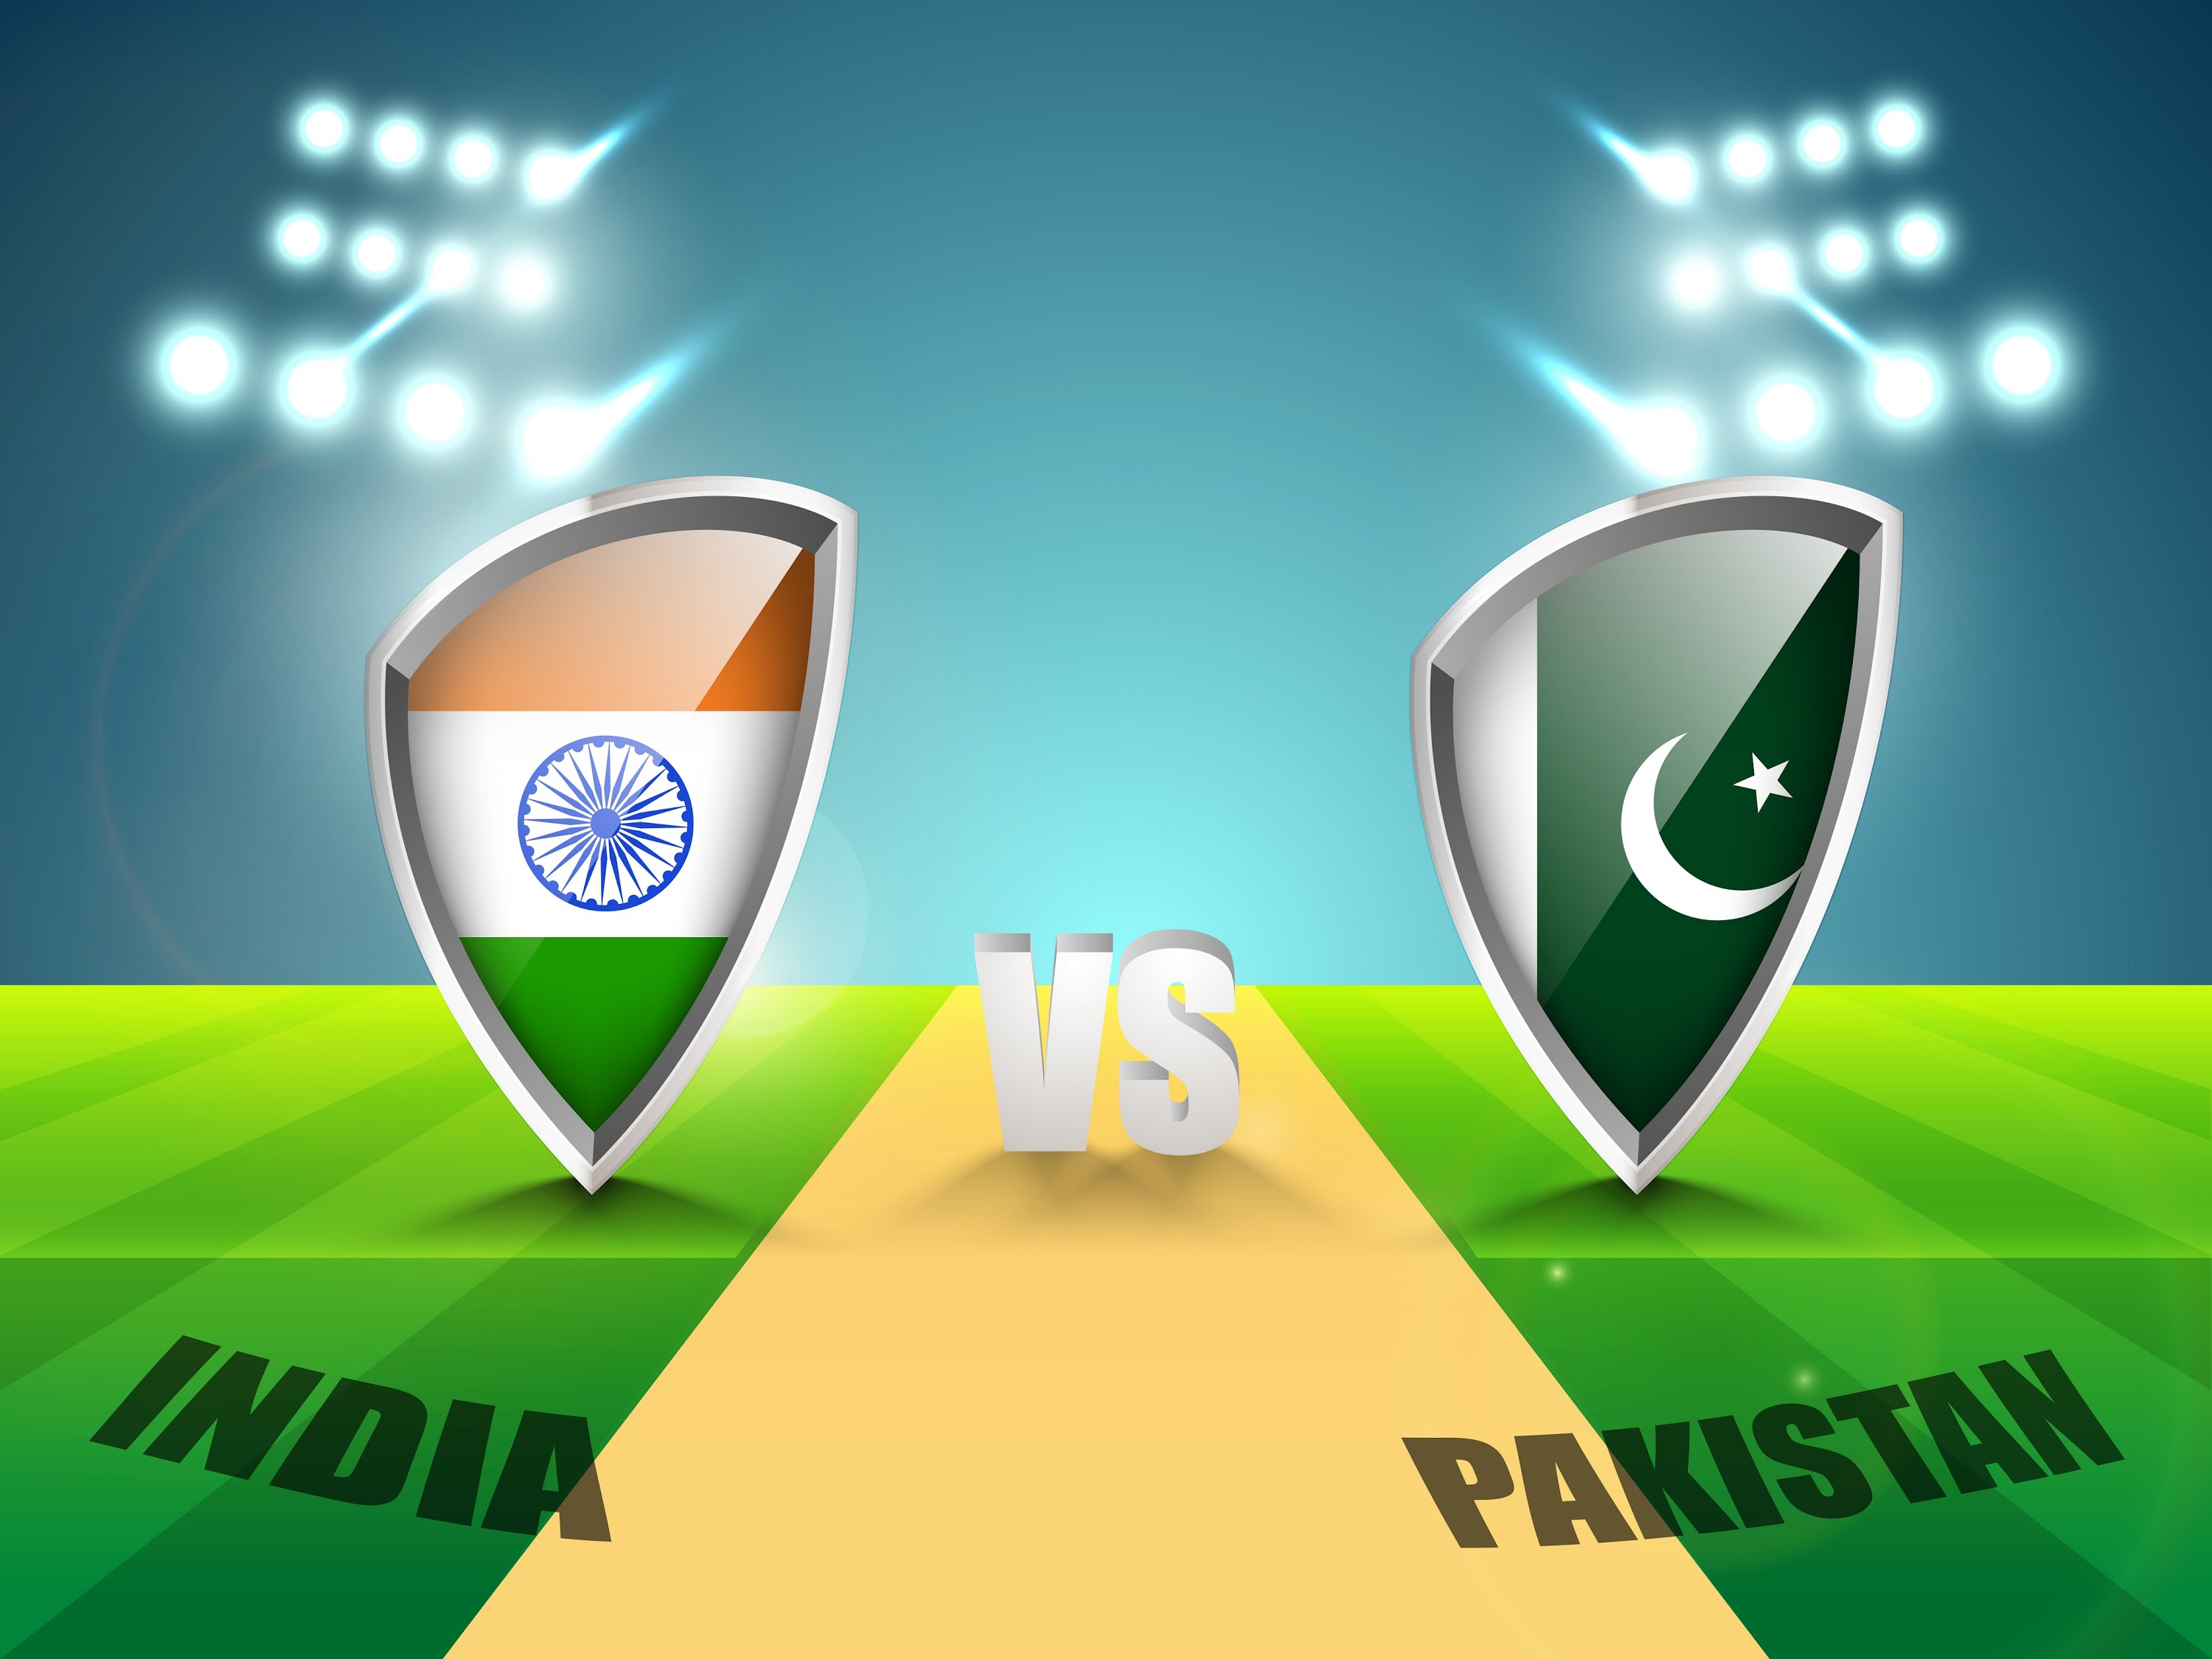 2 जुलाई को एक बार फिर होंगे भारत-पाकिस्तान क्रिकेट के मैदान में आमने-सामने,भारत लेगा चैम्पियन्स ट्राफी का बदला 1